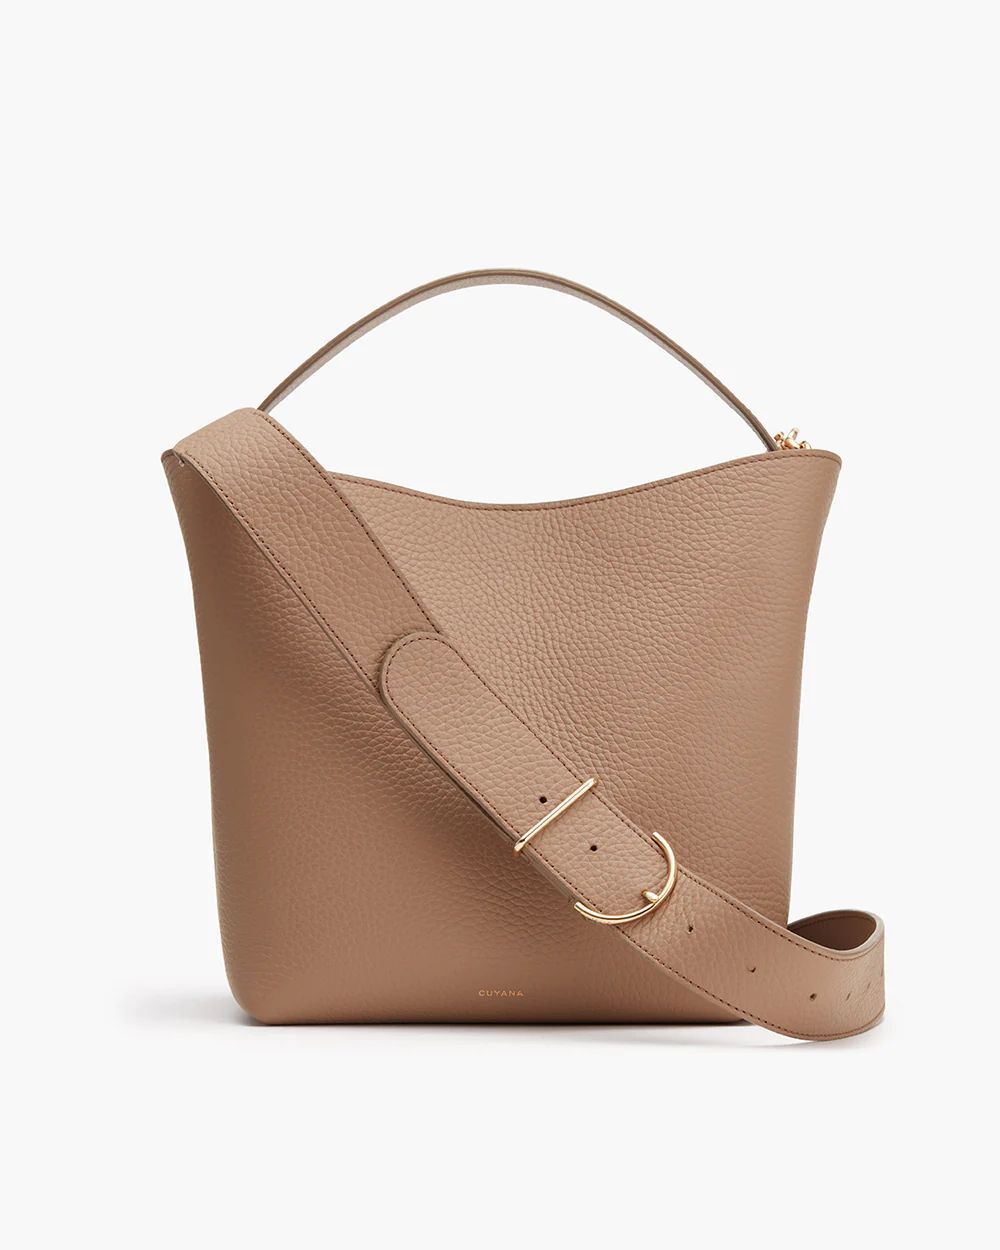 Linea Bucket Bag | Cuyana